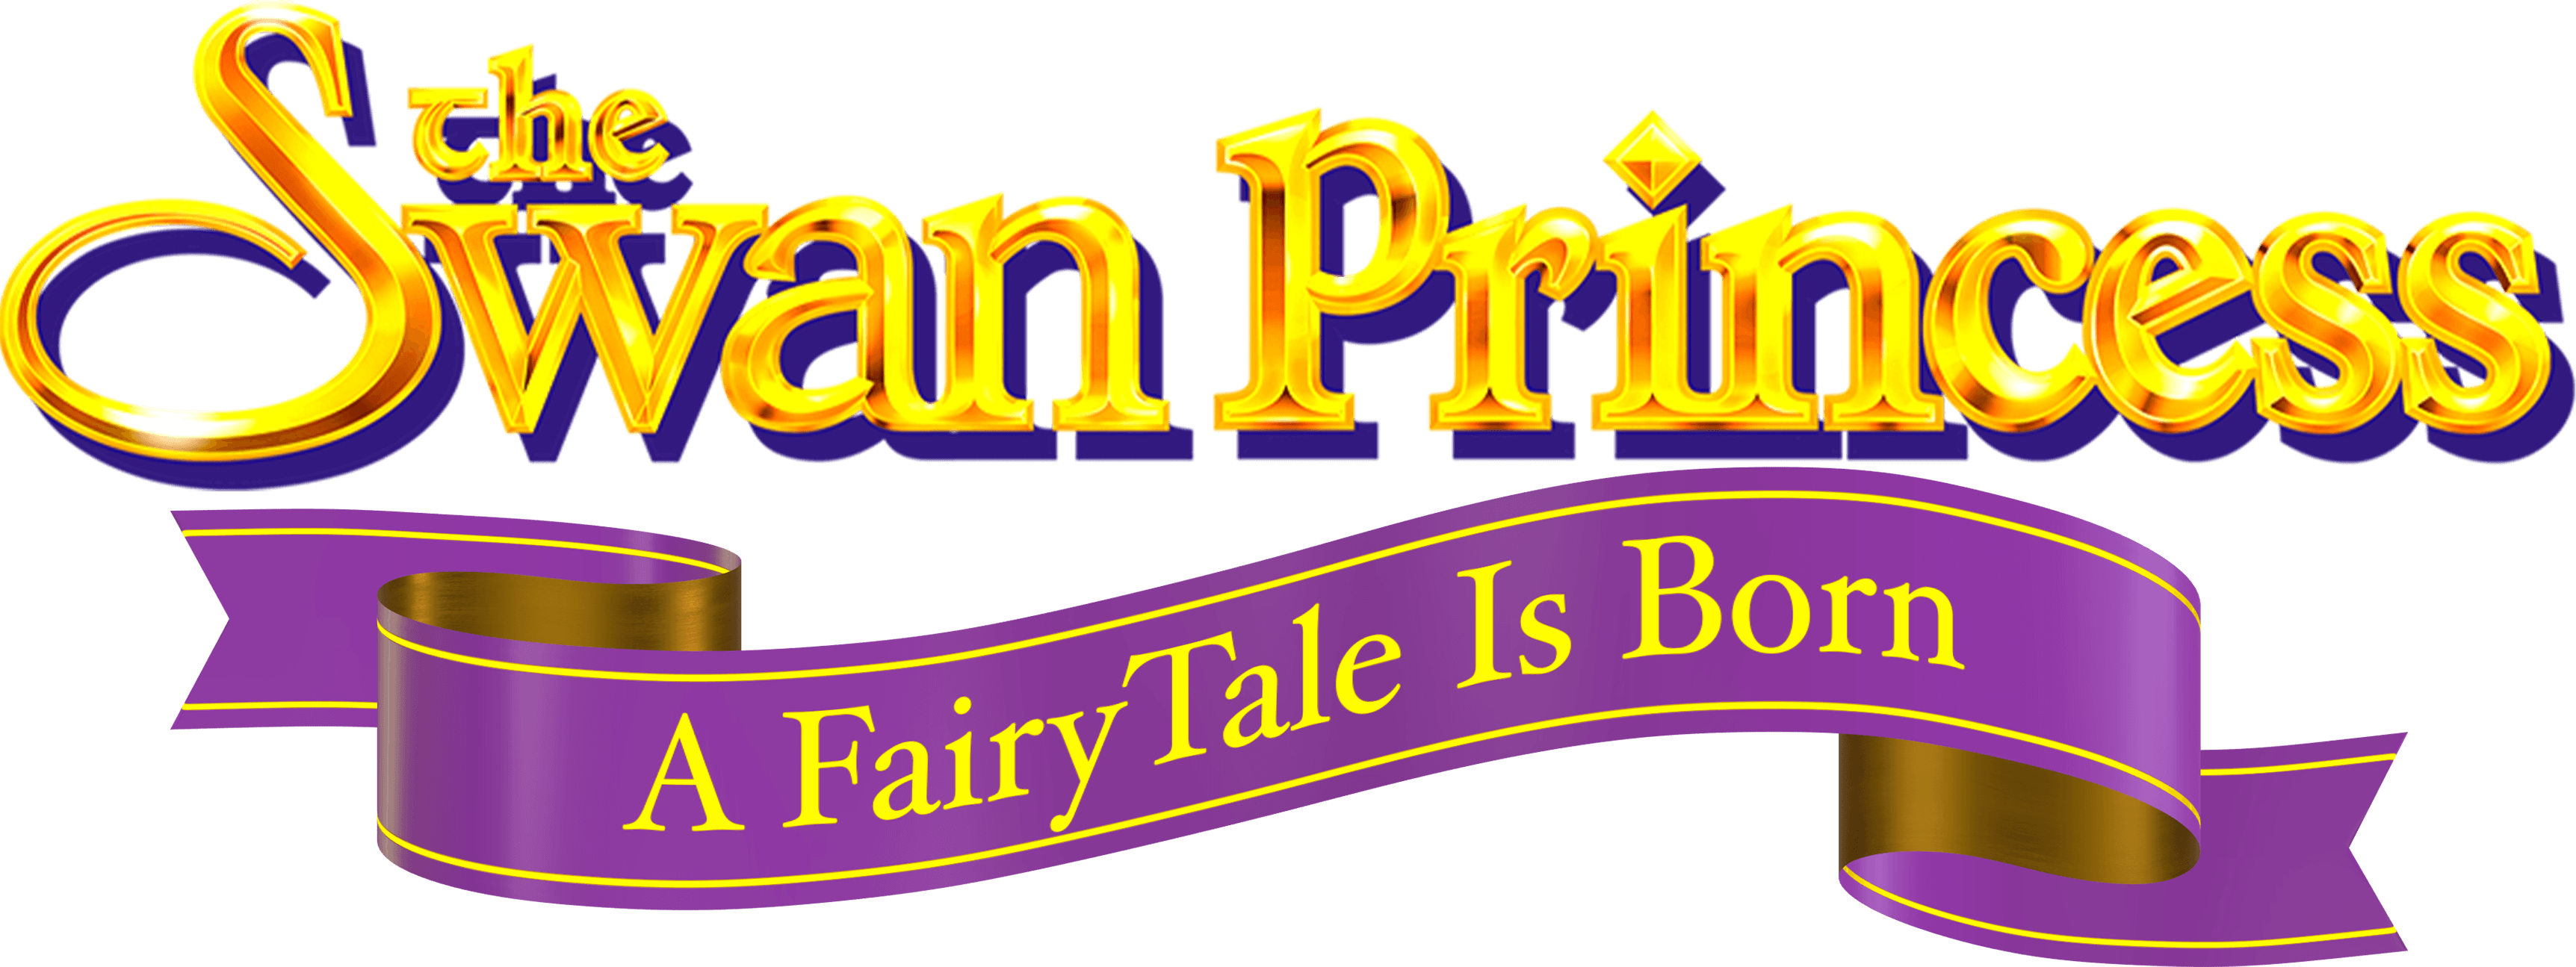 The Swan Princess: A Fairytale Is Born logo